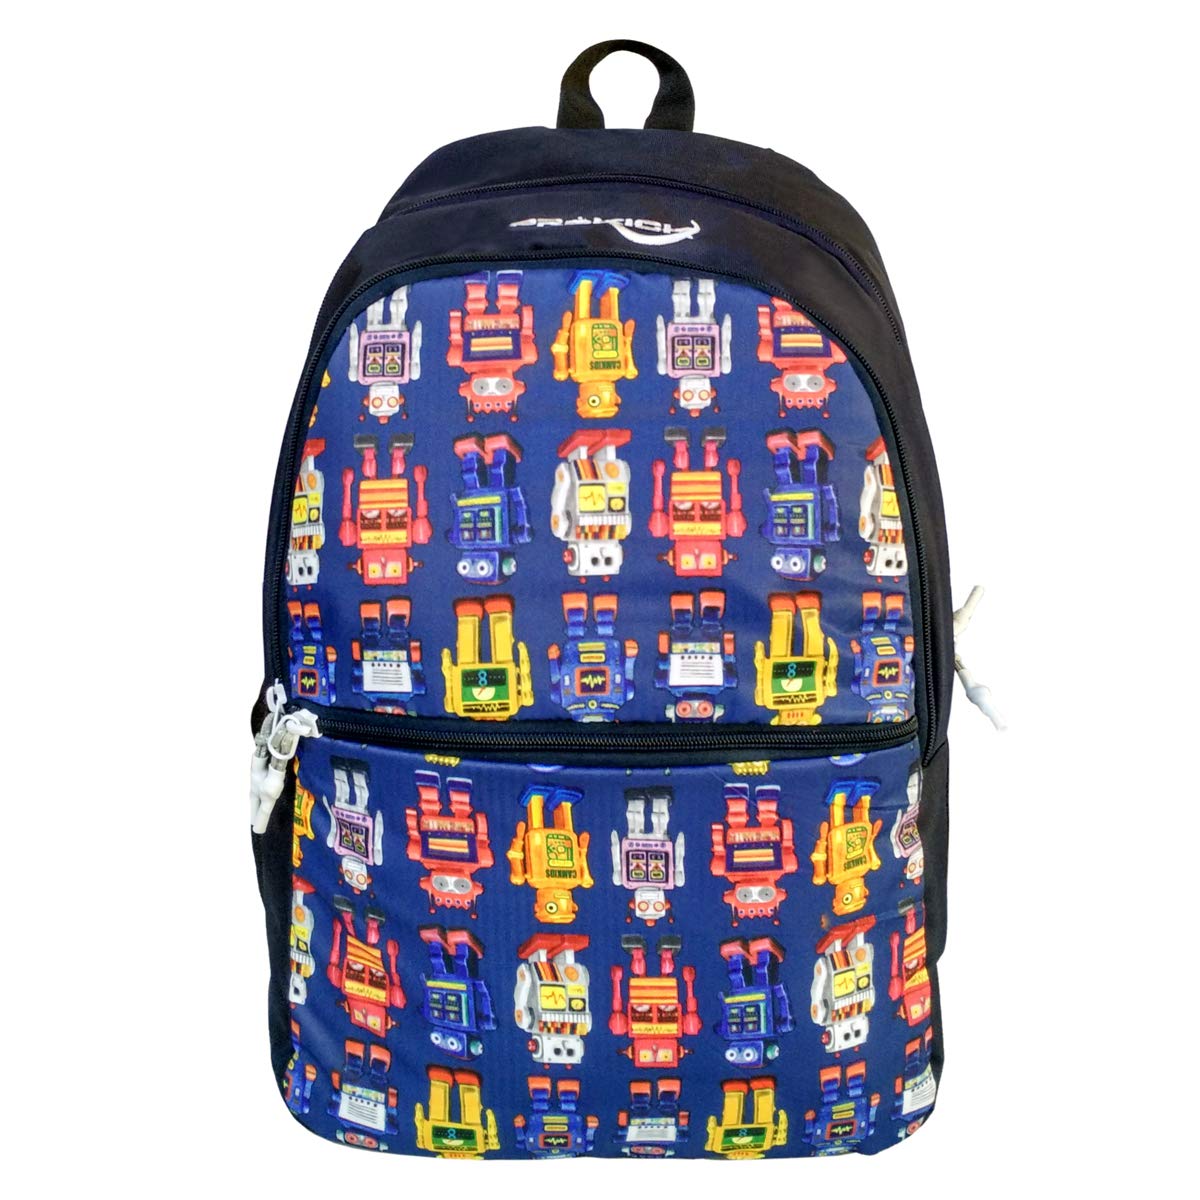 Prokick 30L Waterproof Casual Backpack | School Bag - Robo - Best Price online Prokicksports.com